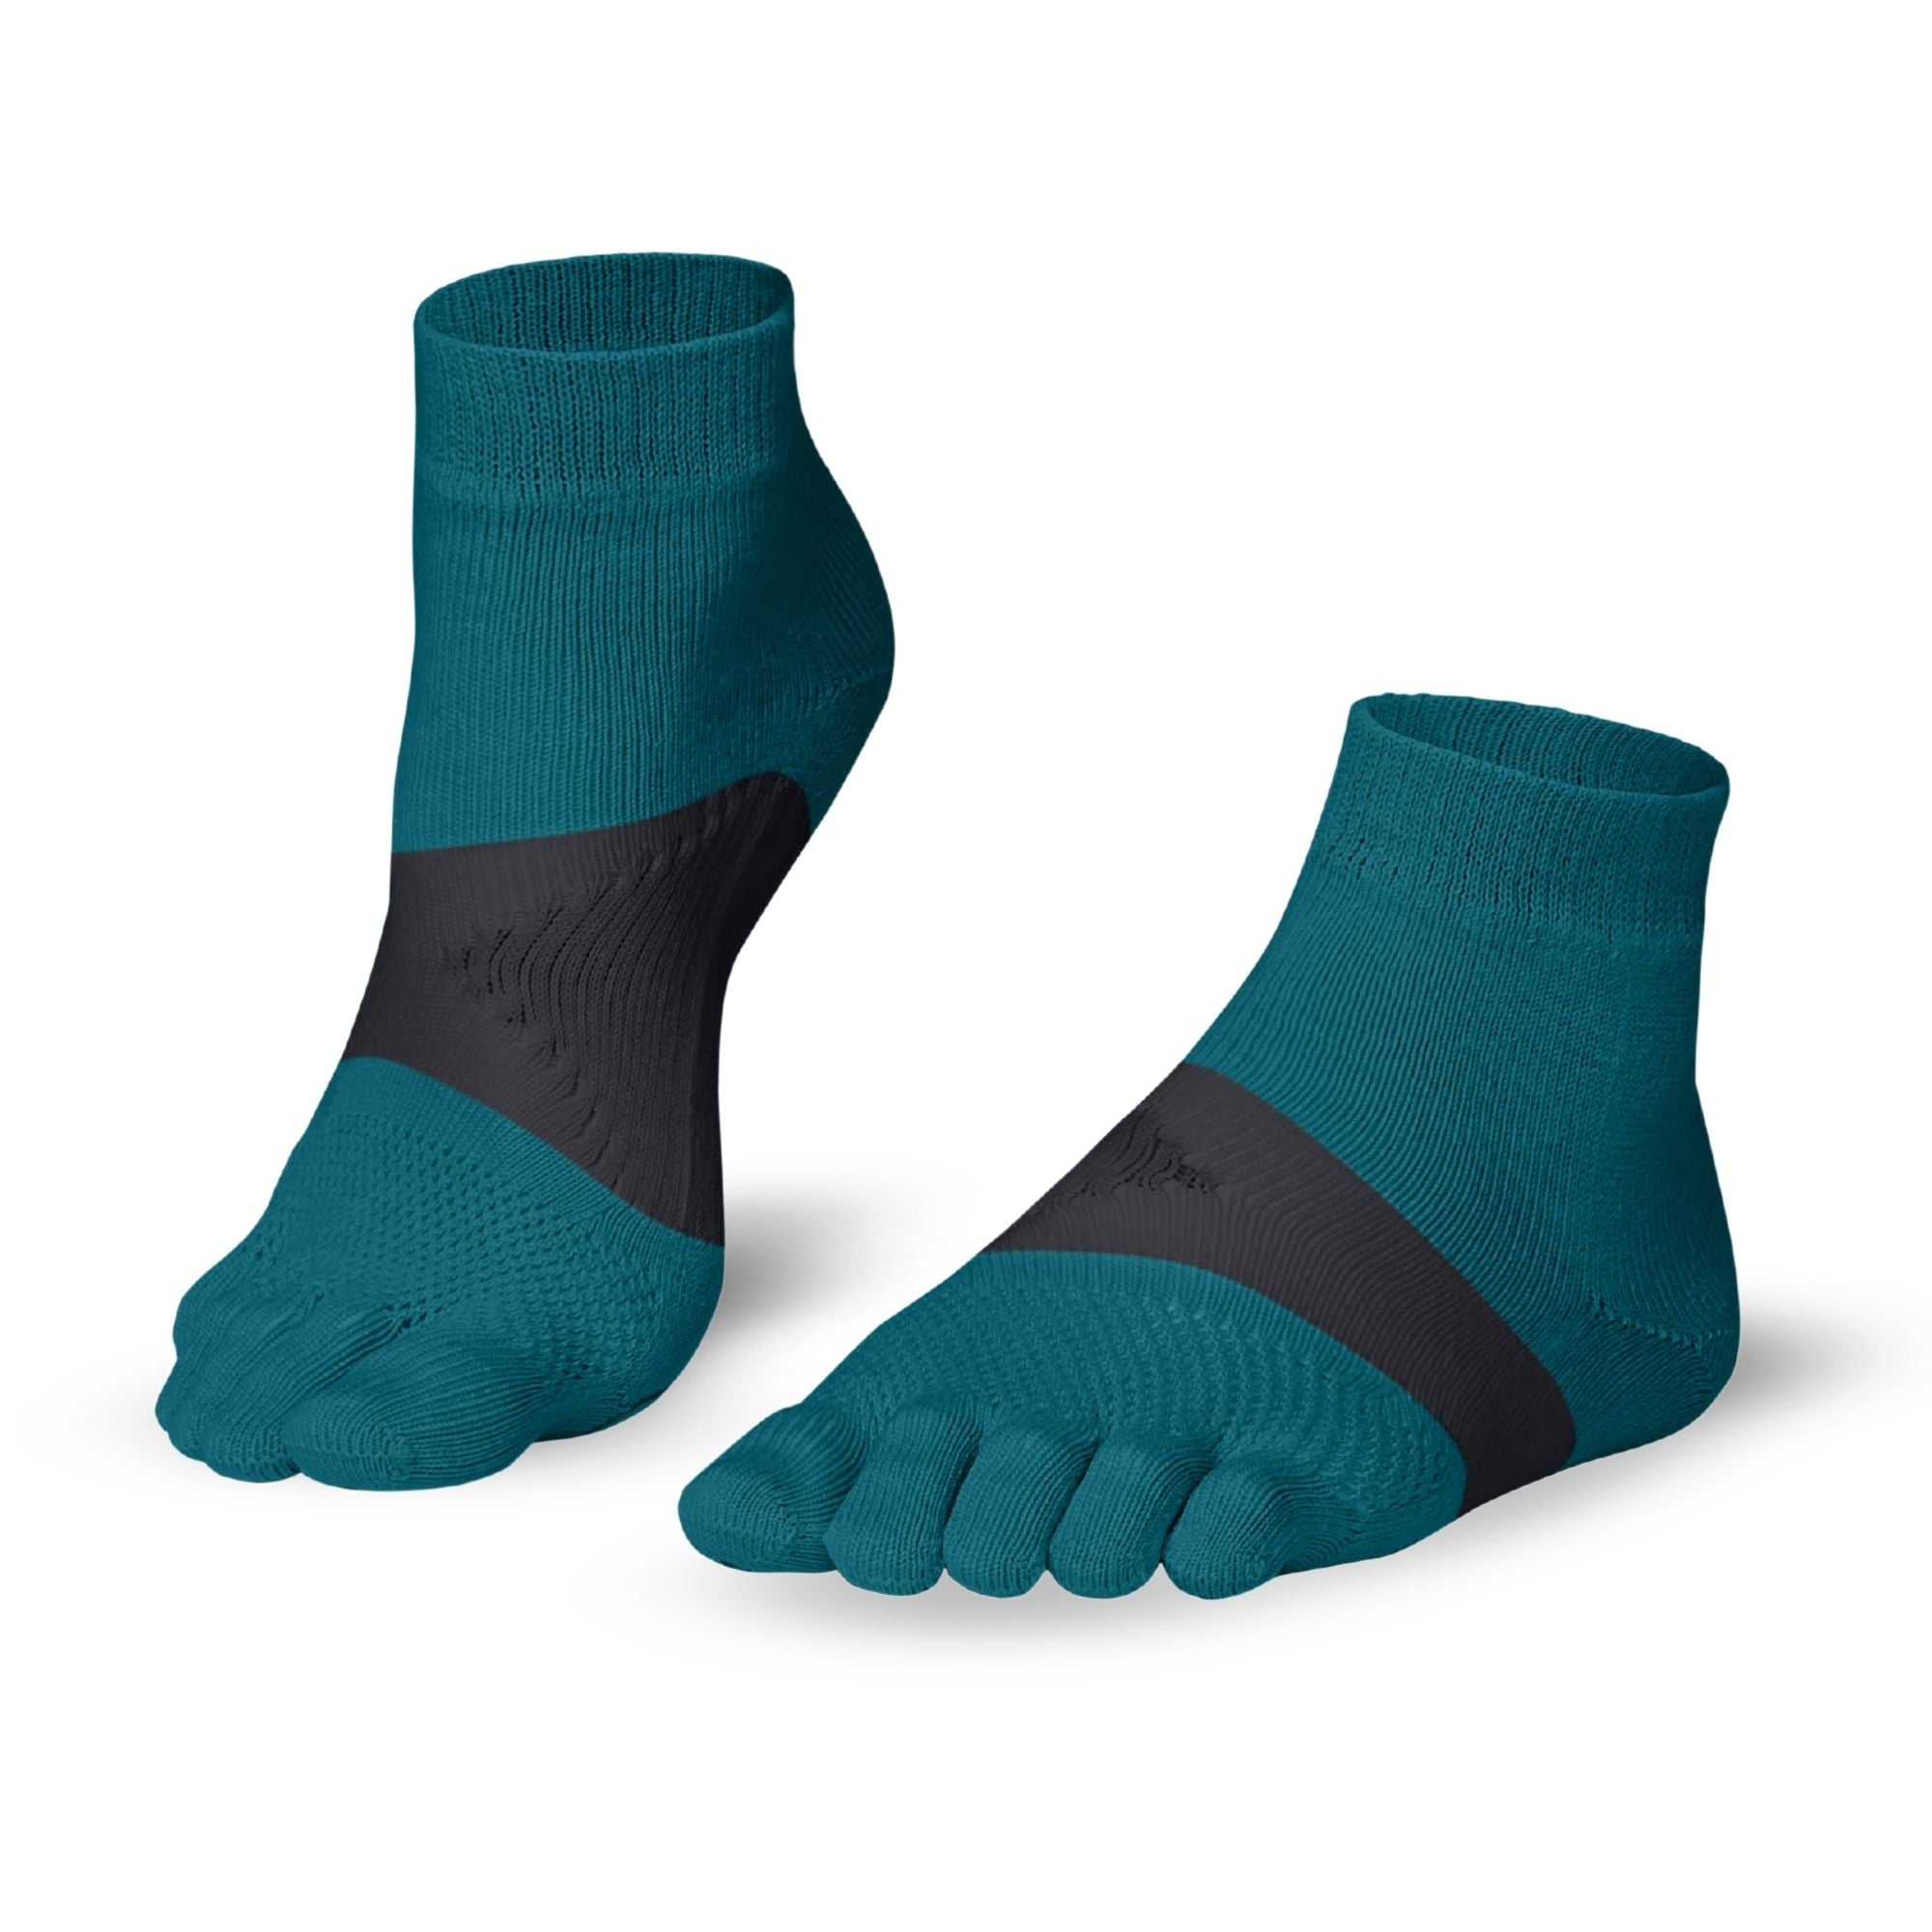 Knitido Marathon TS toe socks - Knitido®